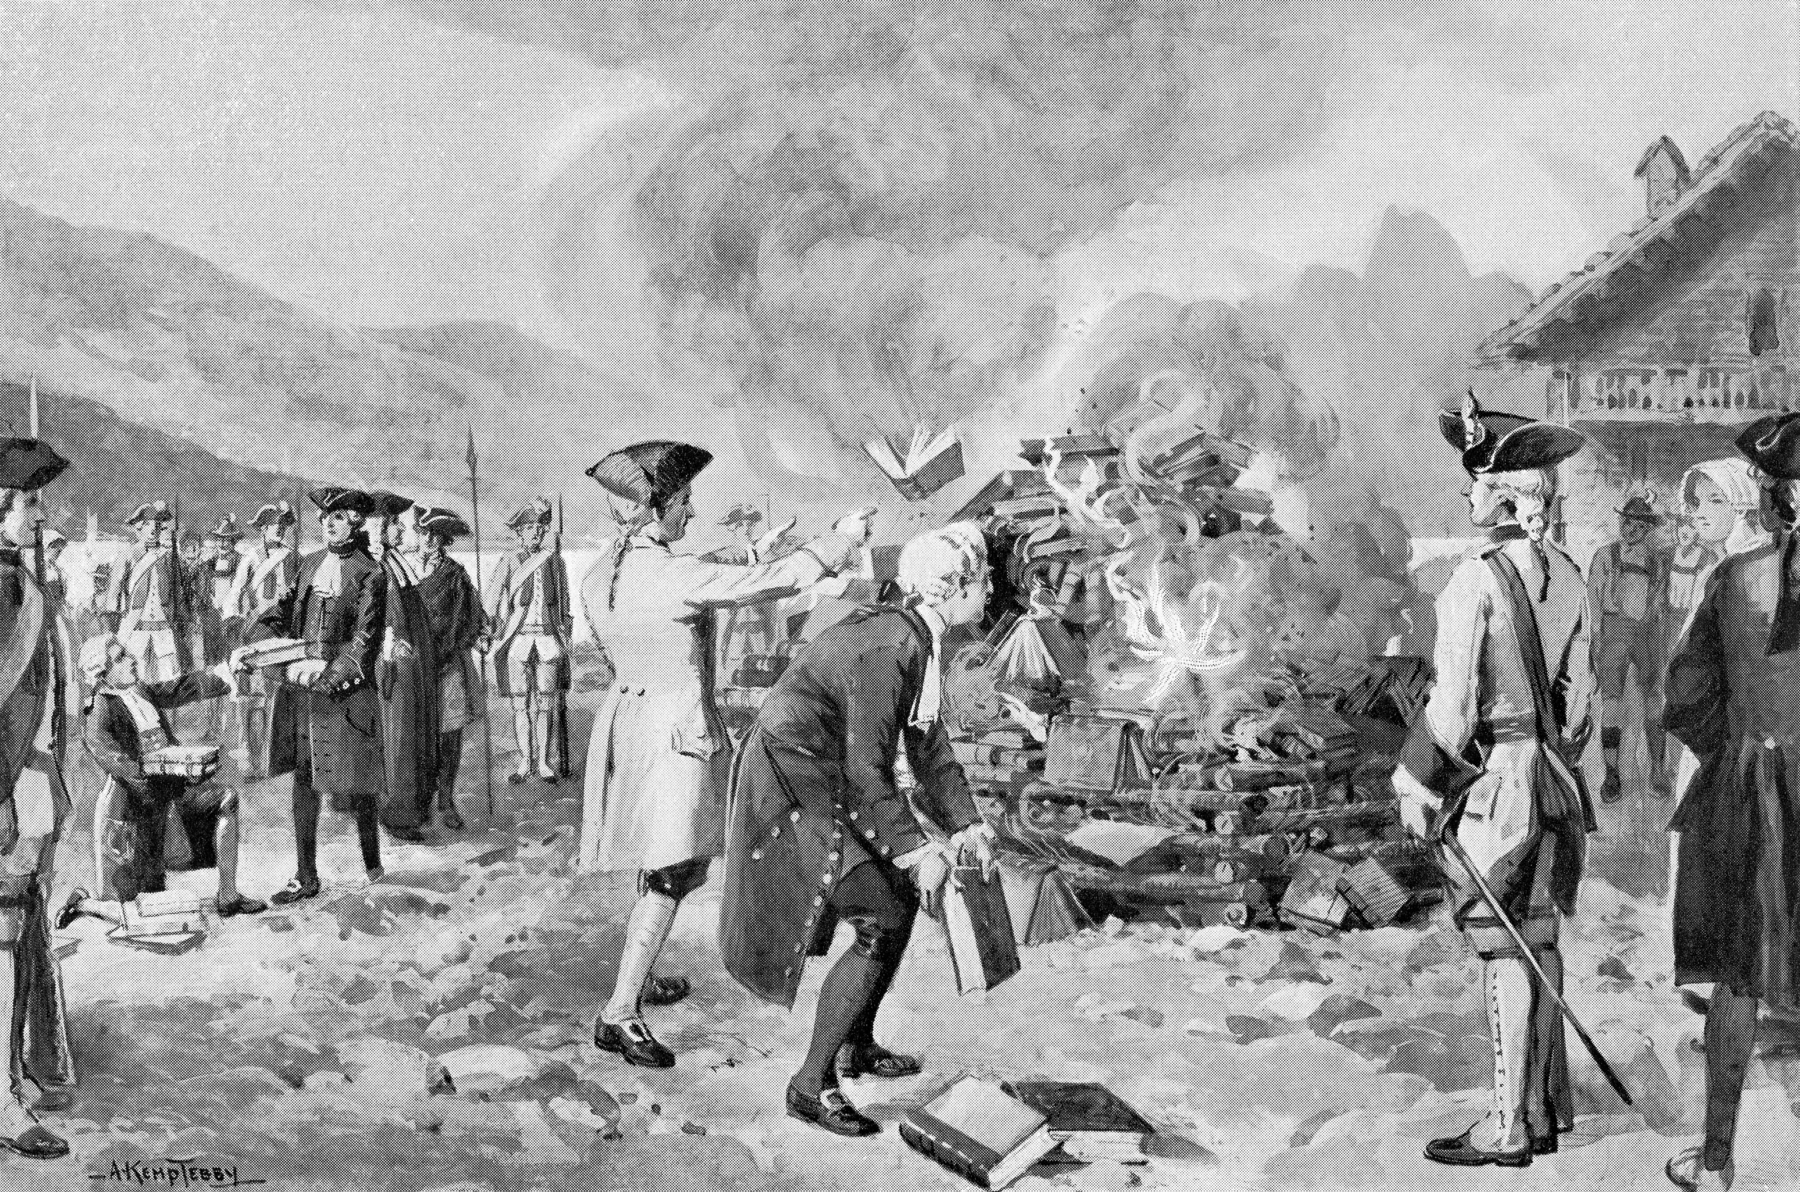 Ilustração em preto e branco. Homens de chapéu triangular e cabelo trançado, jogam livros em uma grande fogueira. Alguns homens carregam lanças. Ao redor da fogueira muita fumaça.